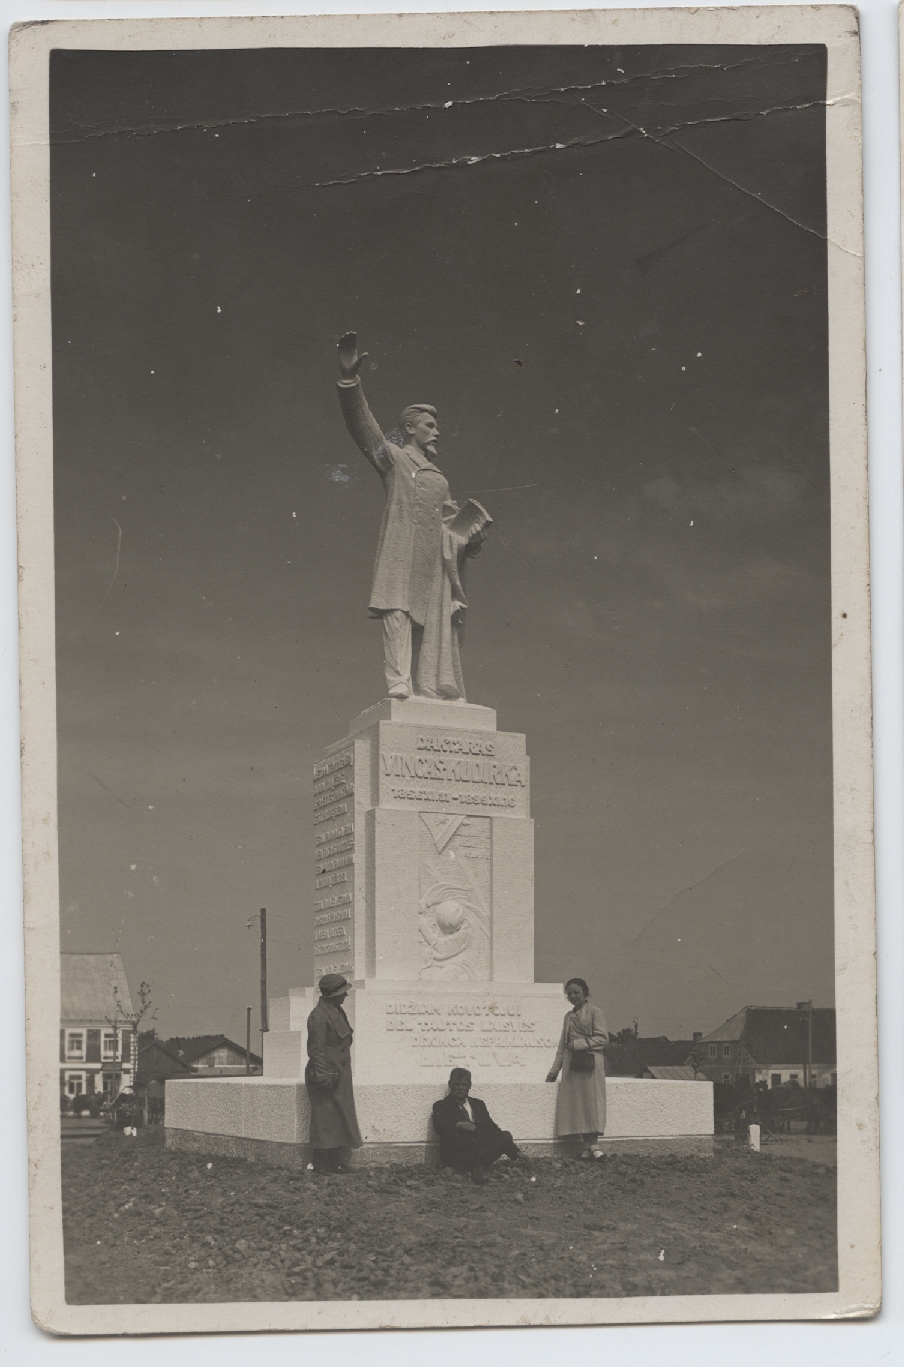 Vincas Grybas prie ką tik baigto statyti paminklo. 1934 m. Lietuvos nacionalinis muziejus